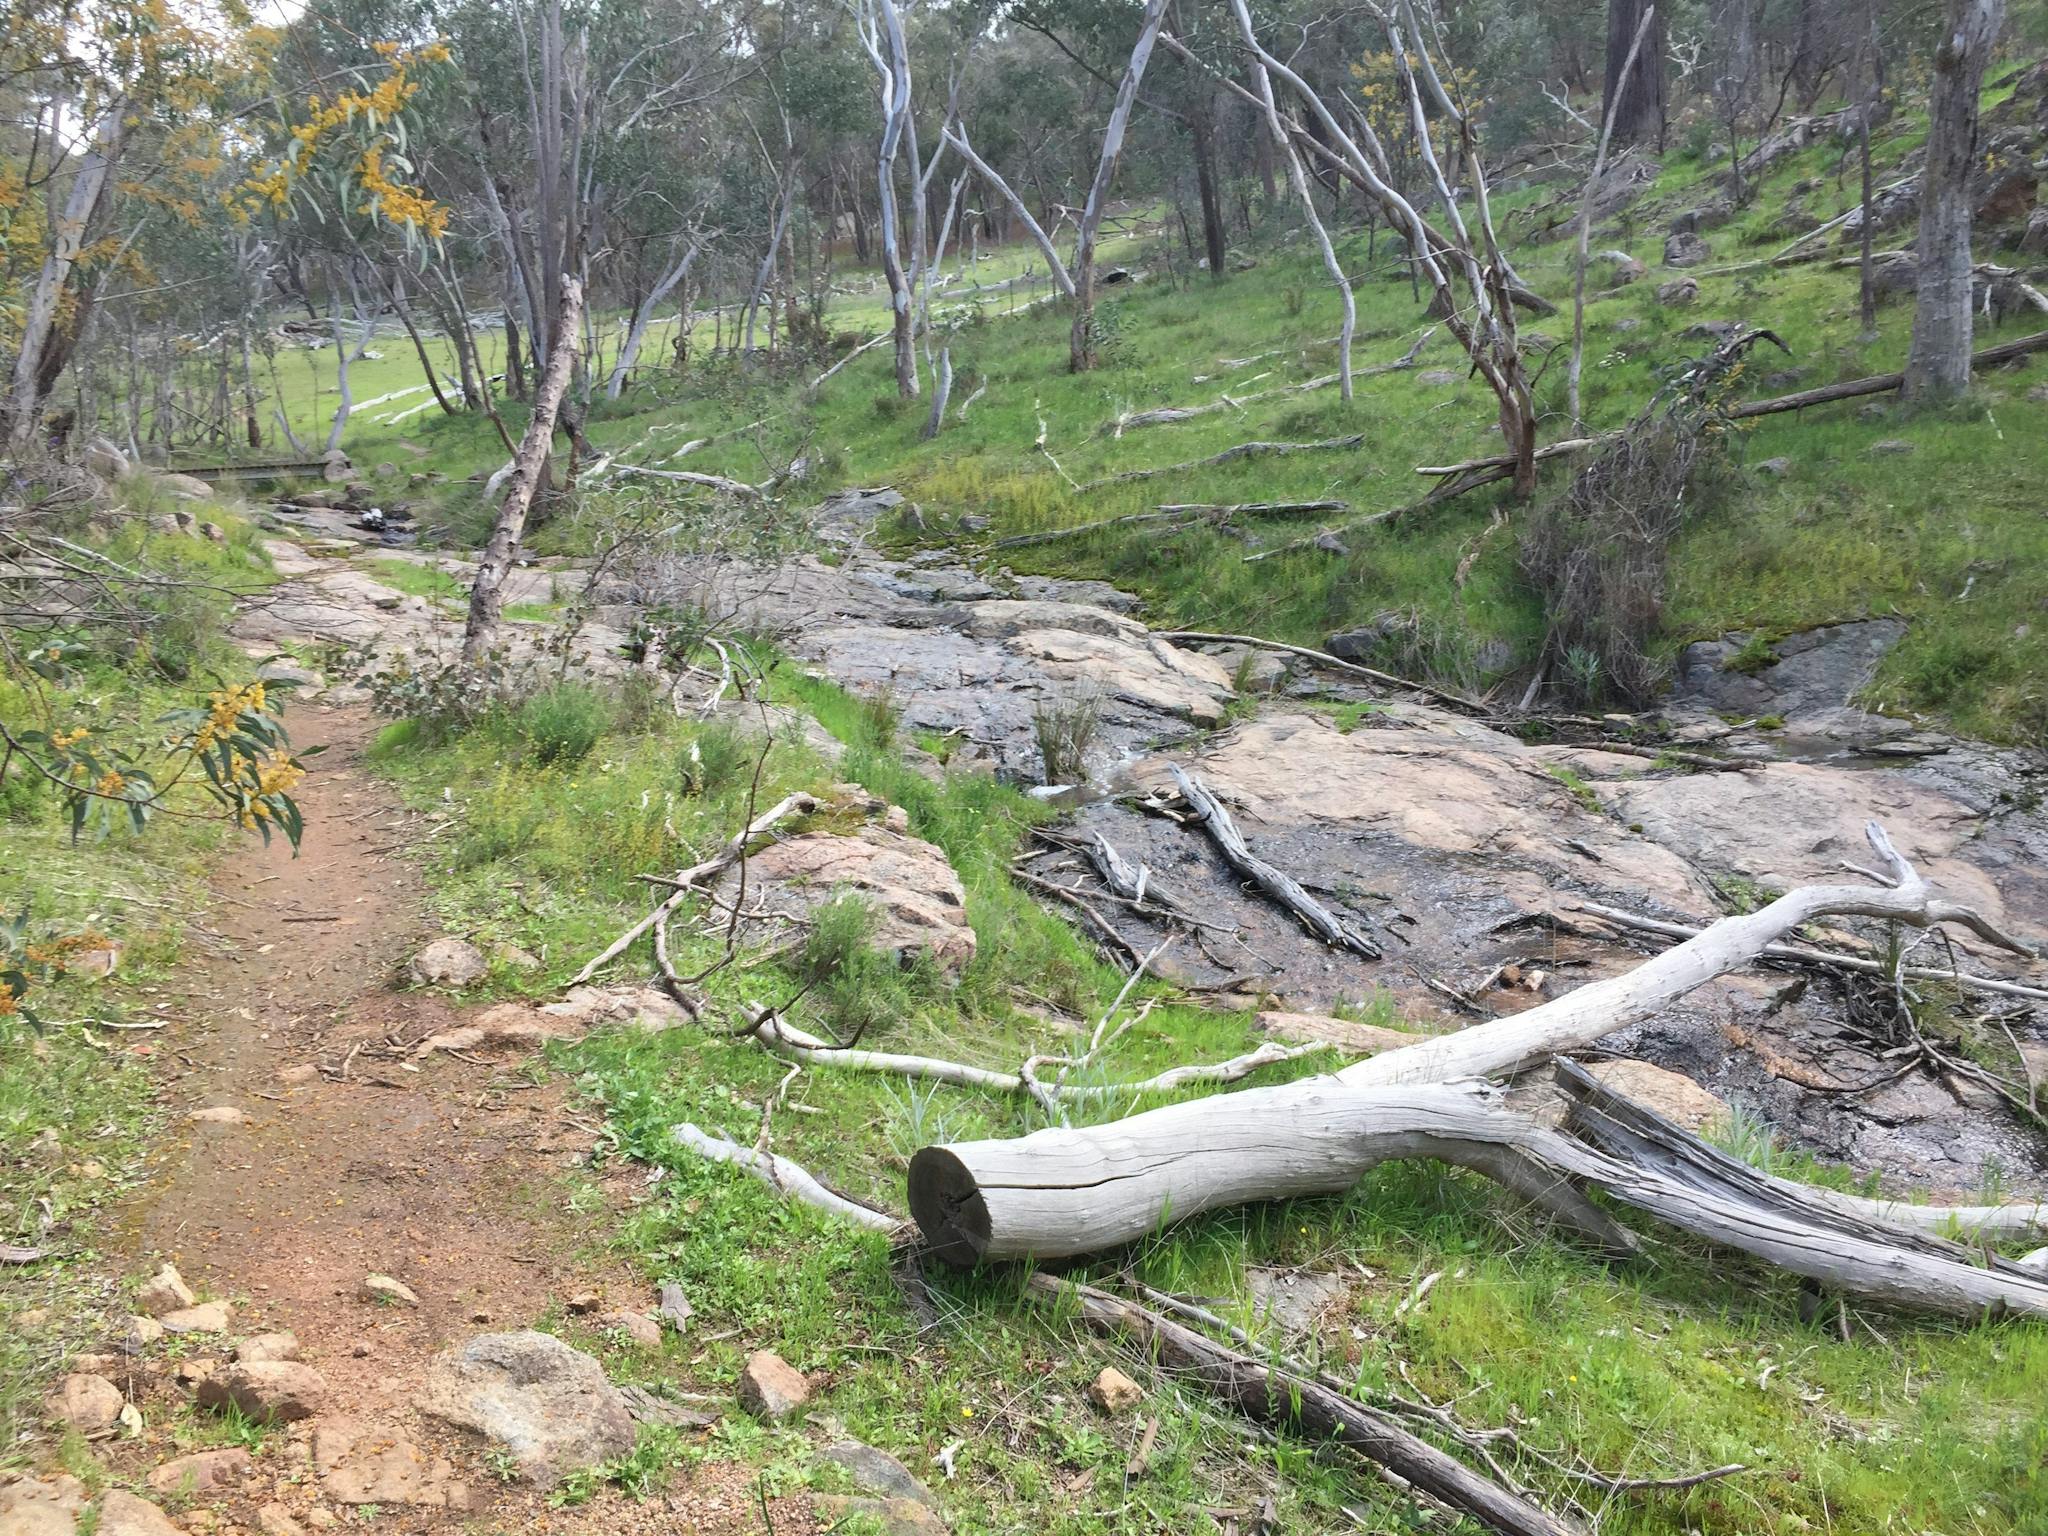 Dirt walking track, wattle, fallen tree, creek, hillside, rocks, footbridge in distance